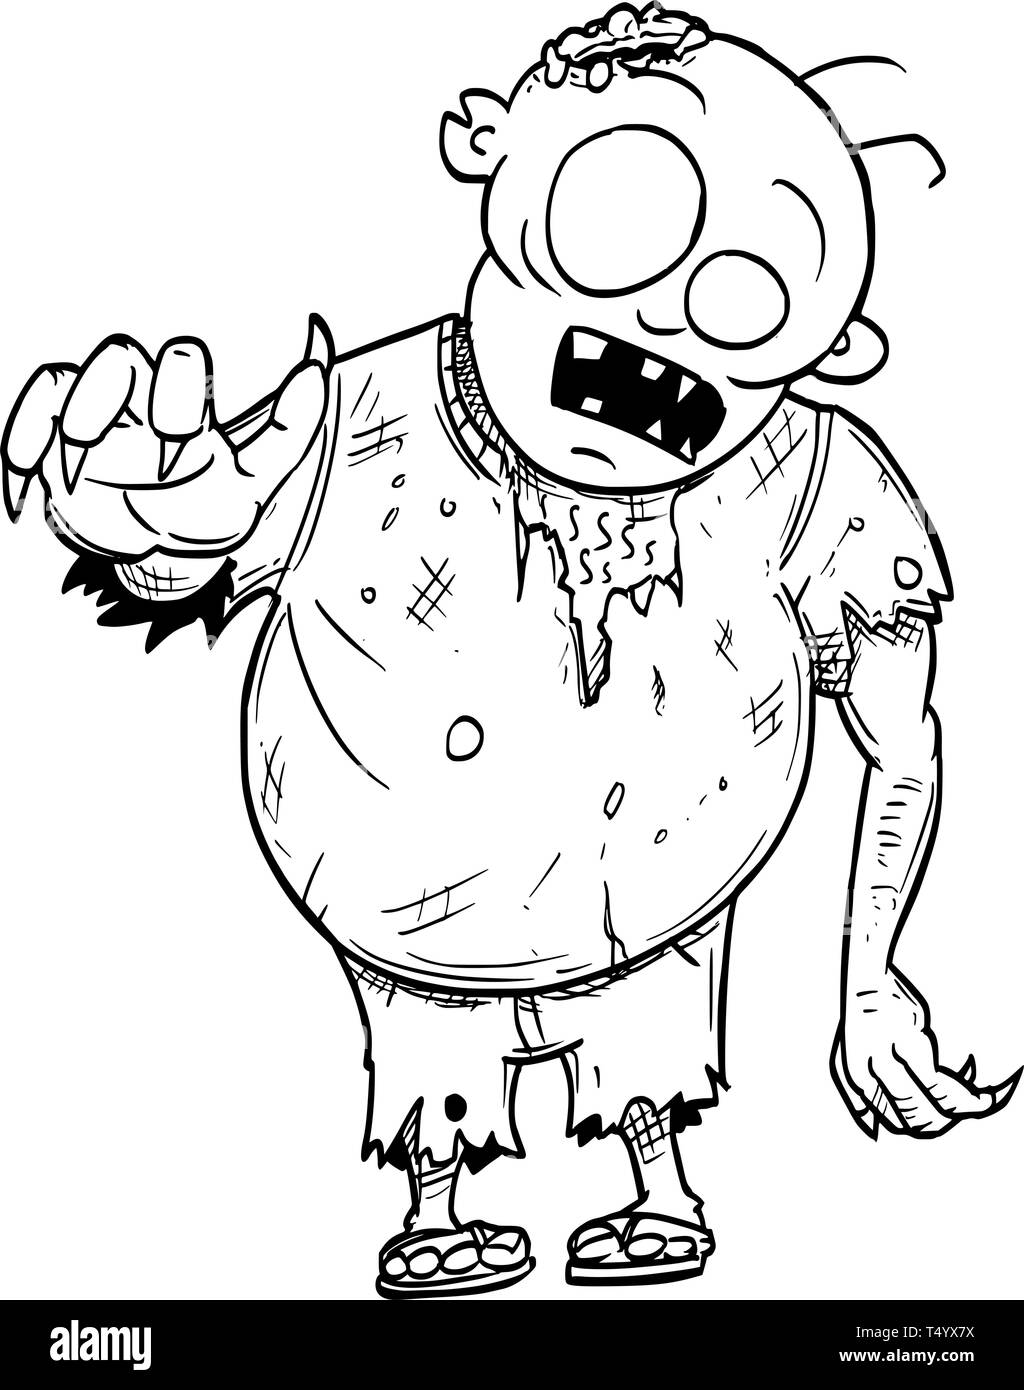 Disegno animato illustrazione concettuale di grasso crazy Halloween monster zombie. Illustrazione Vettoriale